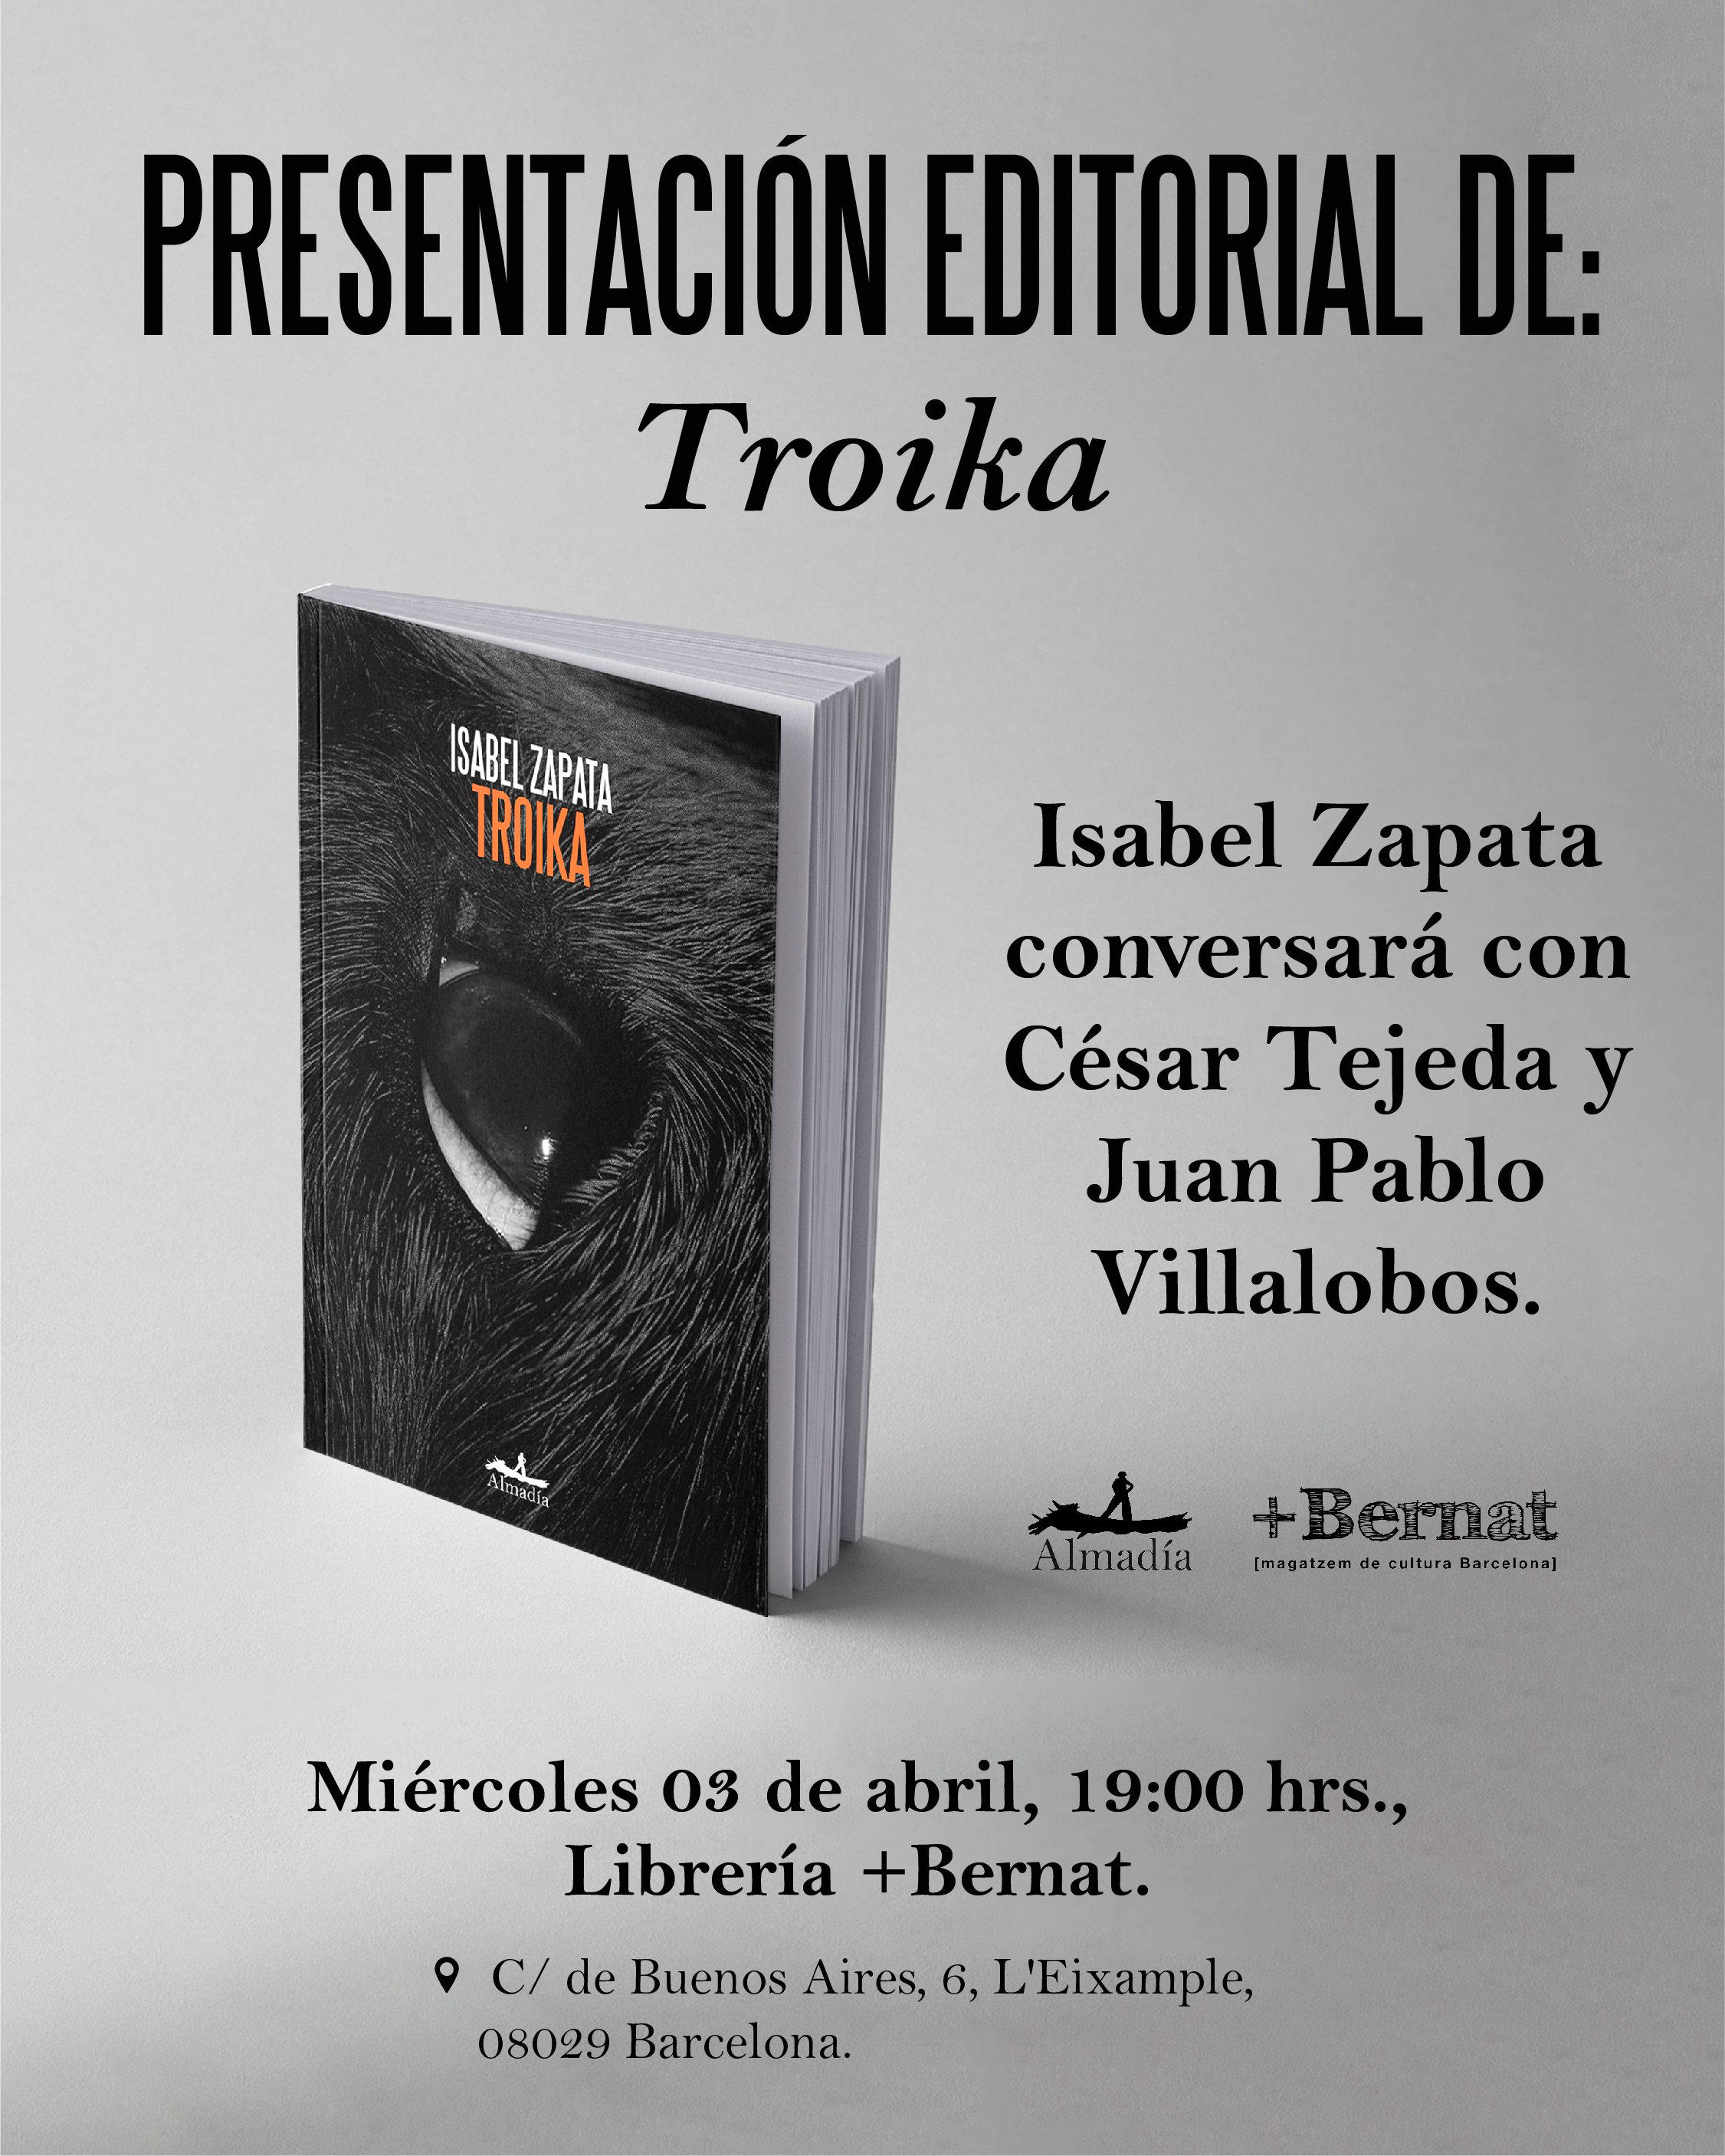 Presentación del libro Troika de Isabel Zapata en la librería + Bernat con César Tejeda y Juan Pablo Villalobos